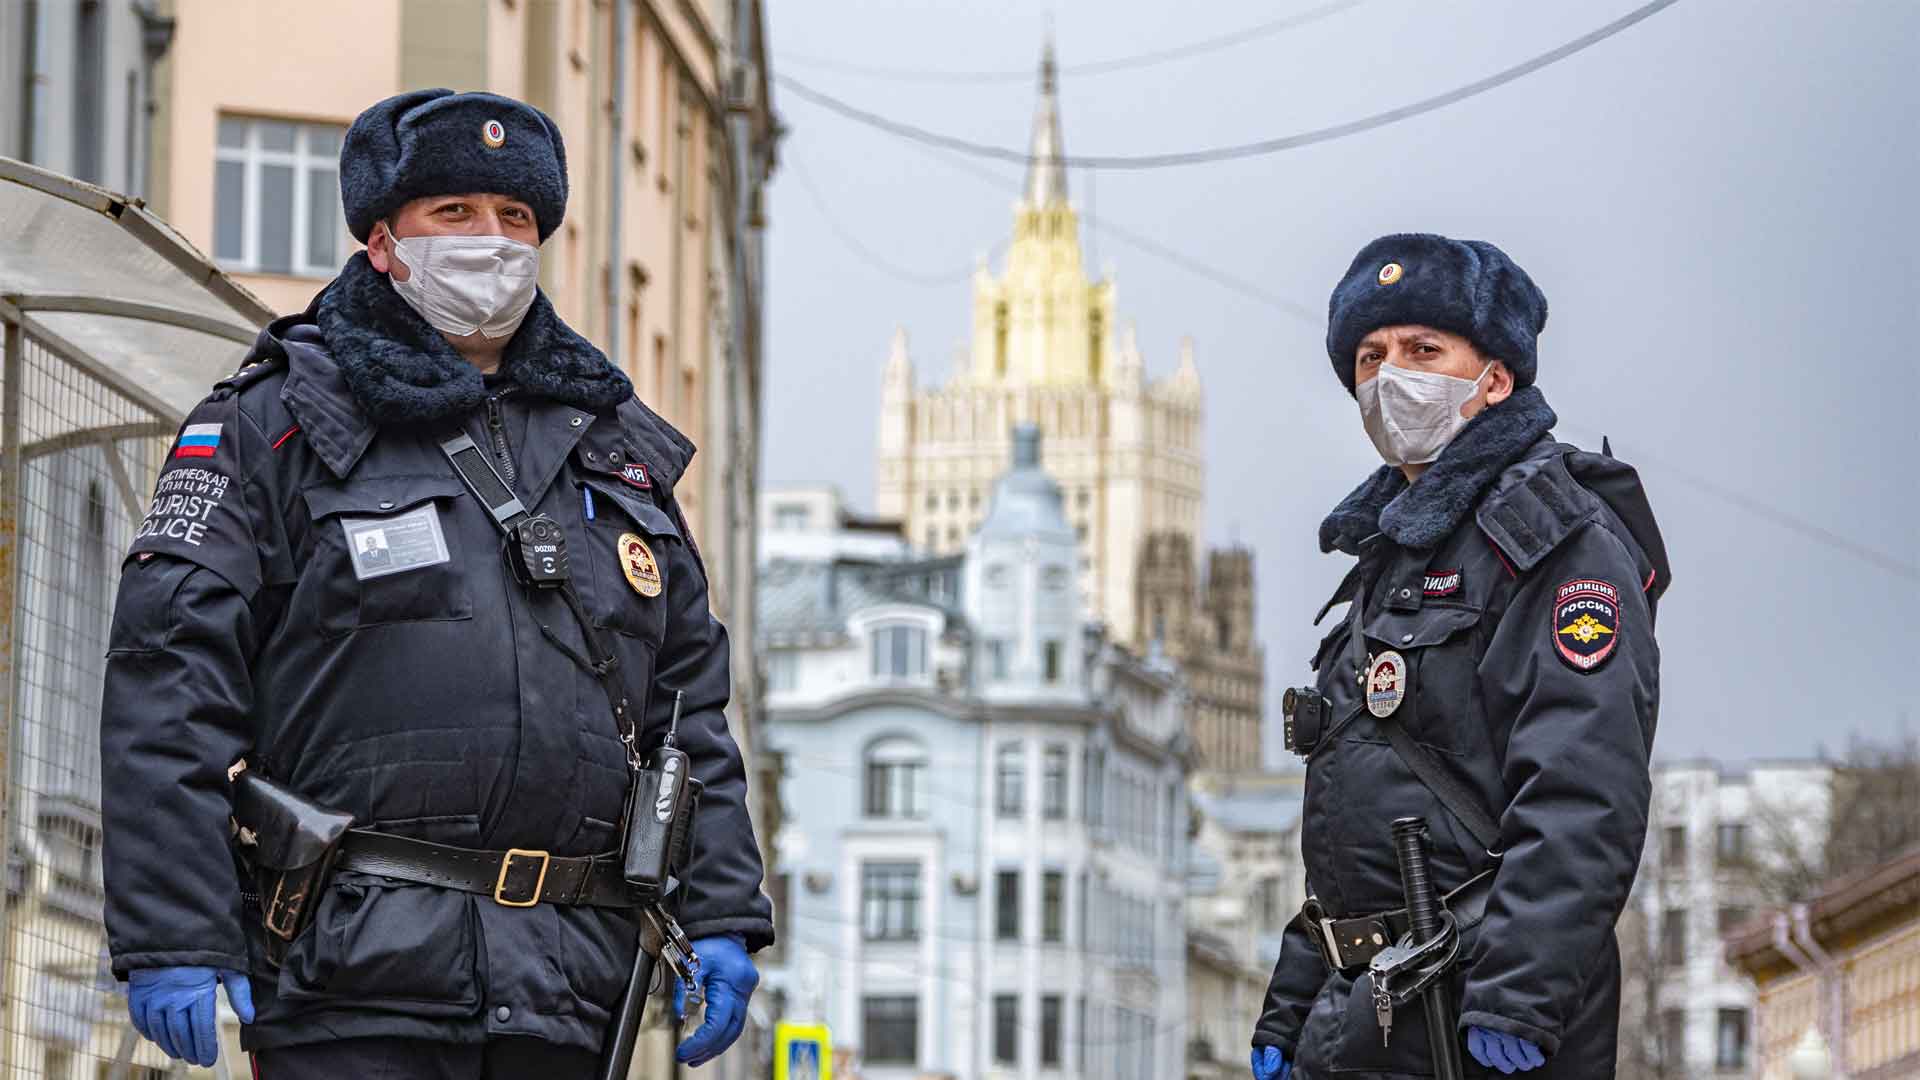 Глава министерства отметил, что полиция совершает поквартирные обходы россиян, чтобы контролировать соблюдение карантина Фото: © GLOBAL LOOK press / Konstantin Kokoshkin